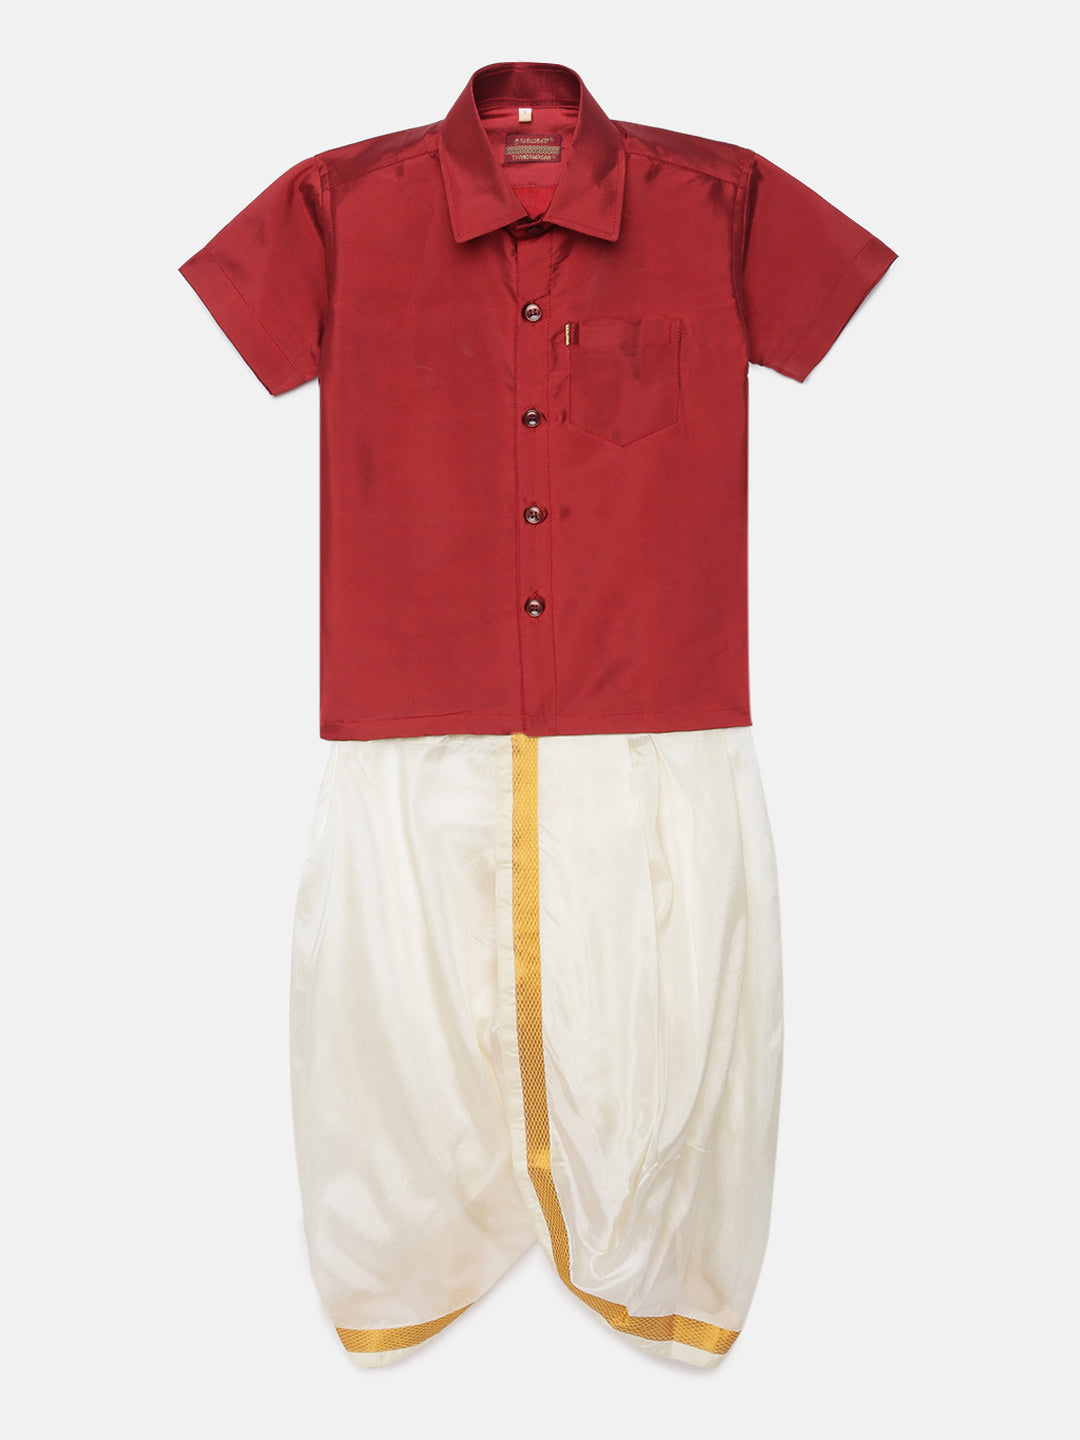 2. Boys Panjagajam & Shirt Set